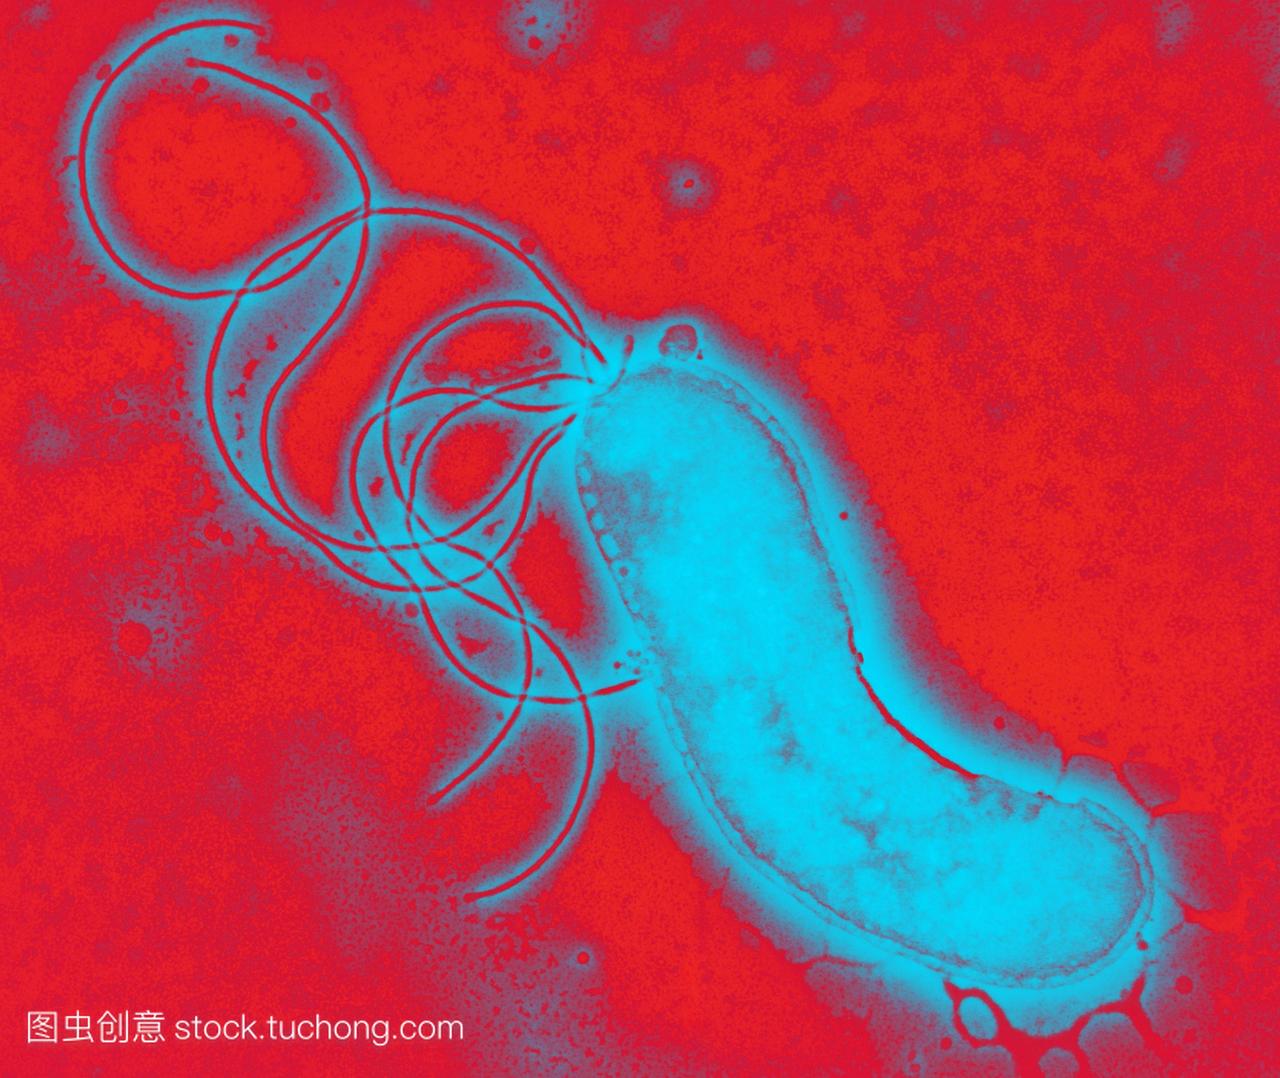 幽门螺杆菌,彩色透射电子显微镜tem。这部分通